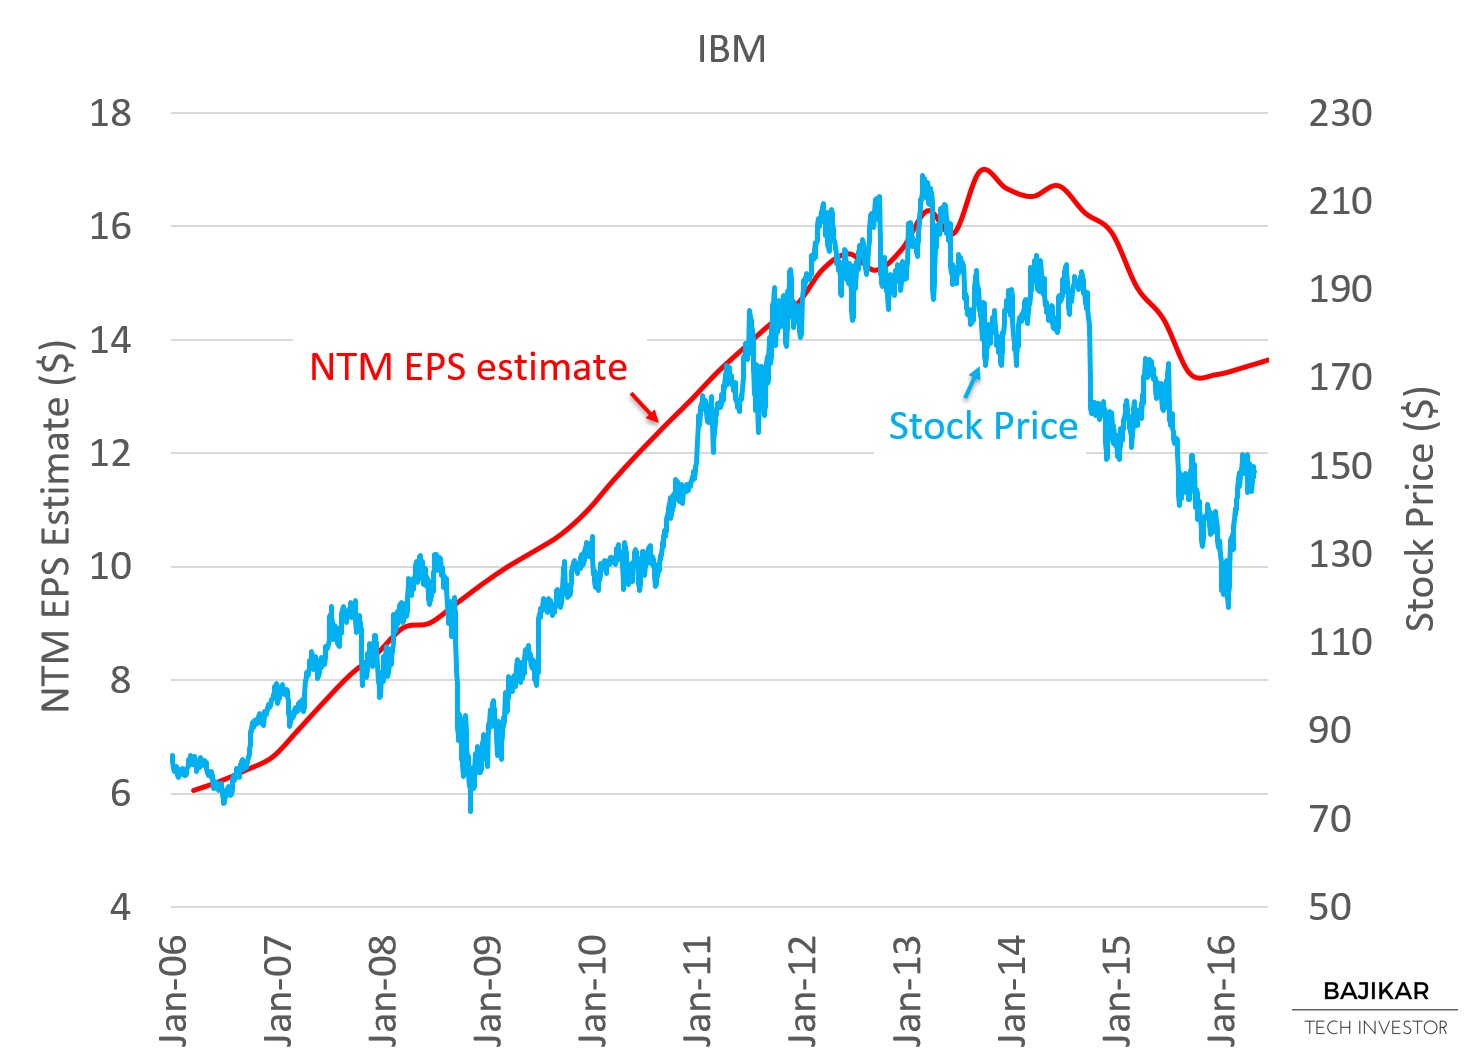 IBM Stock Price vs. NTM EPS estimates